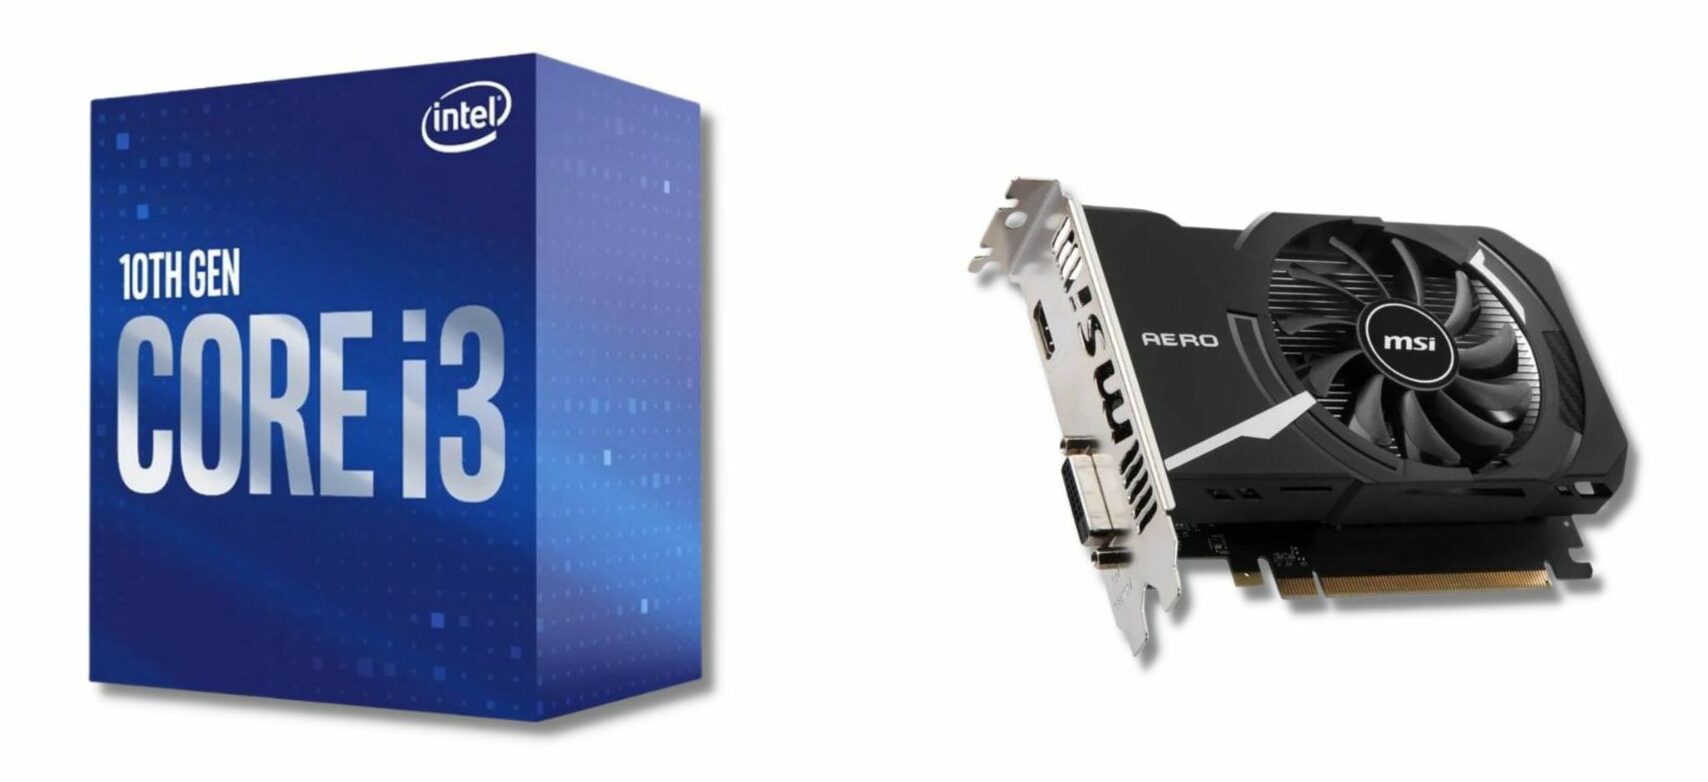 Intel Core i3-10100F + Nvidia GeForce GT 1030